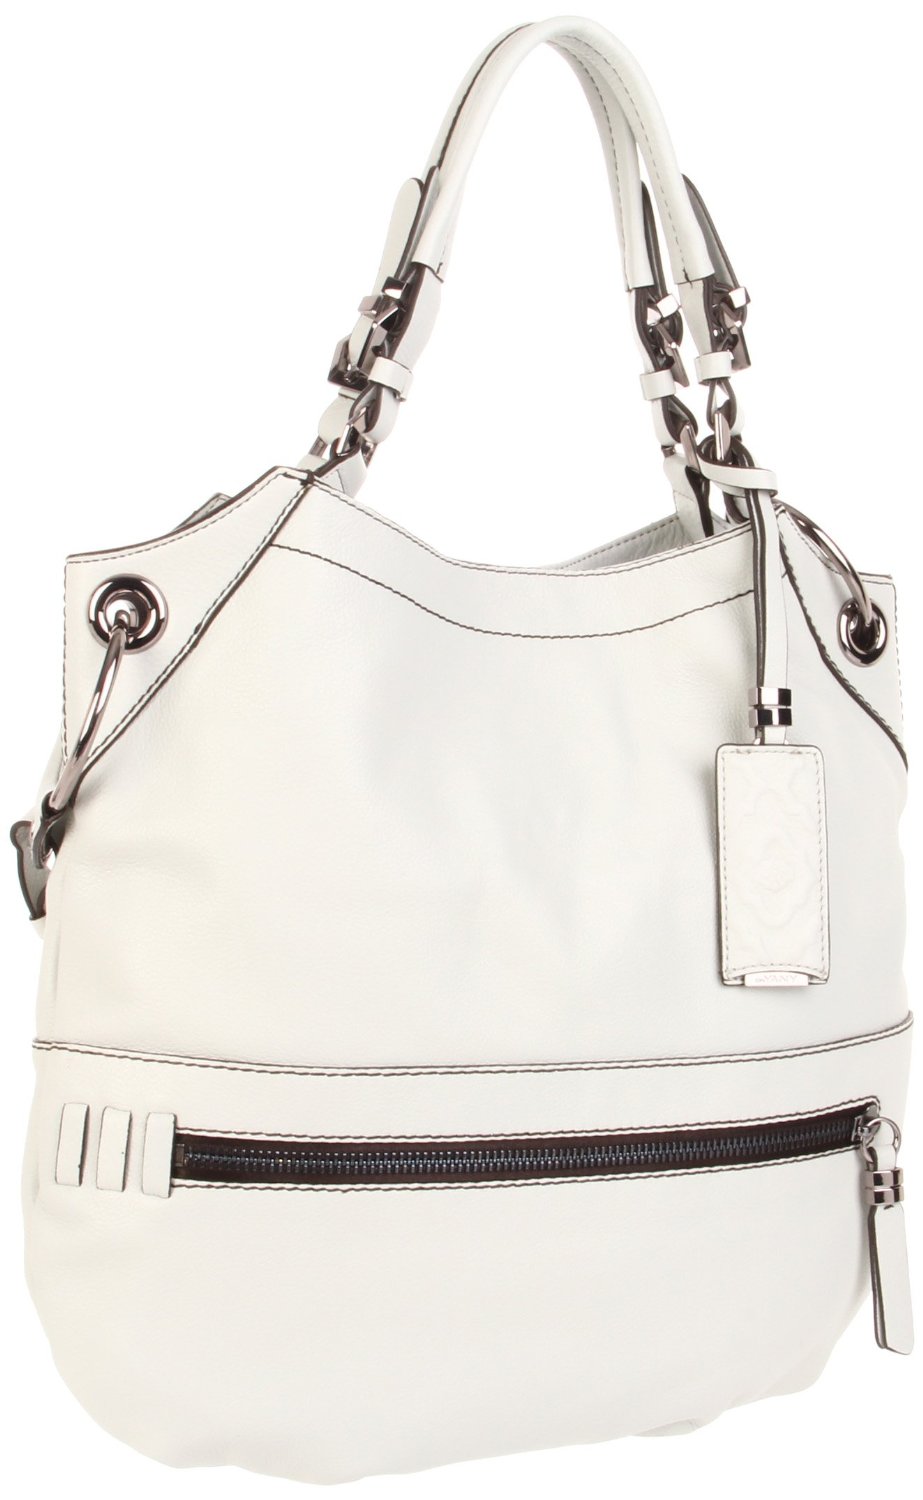 Oryany Handbags Sydney Shoulder Bag in Gray (light grey) | Lyst